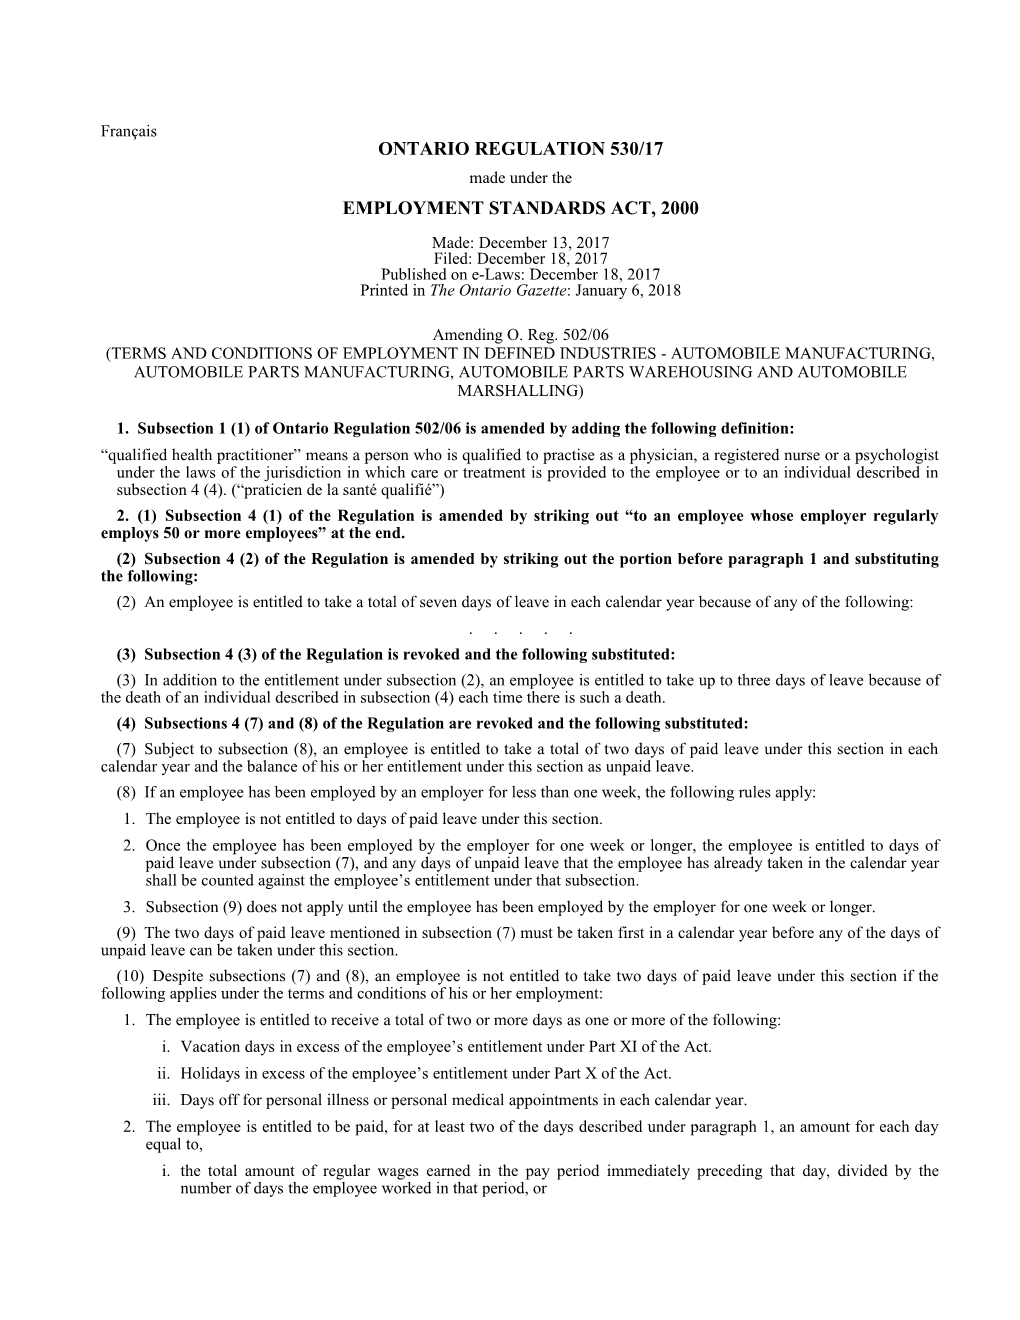 EMPLOYMENT STANDARDS ACT, 2000 - O. Reg. 530/17